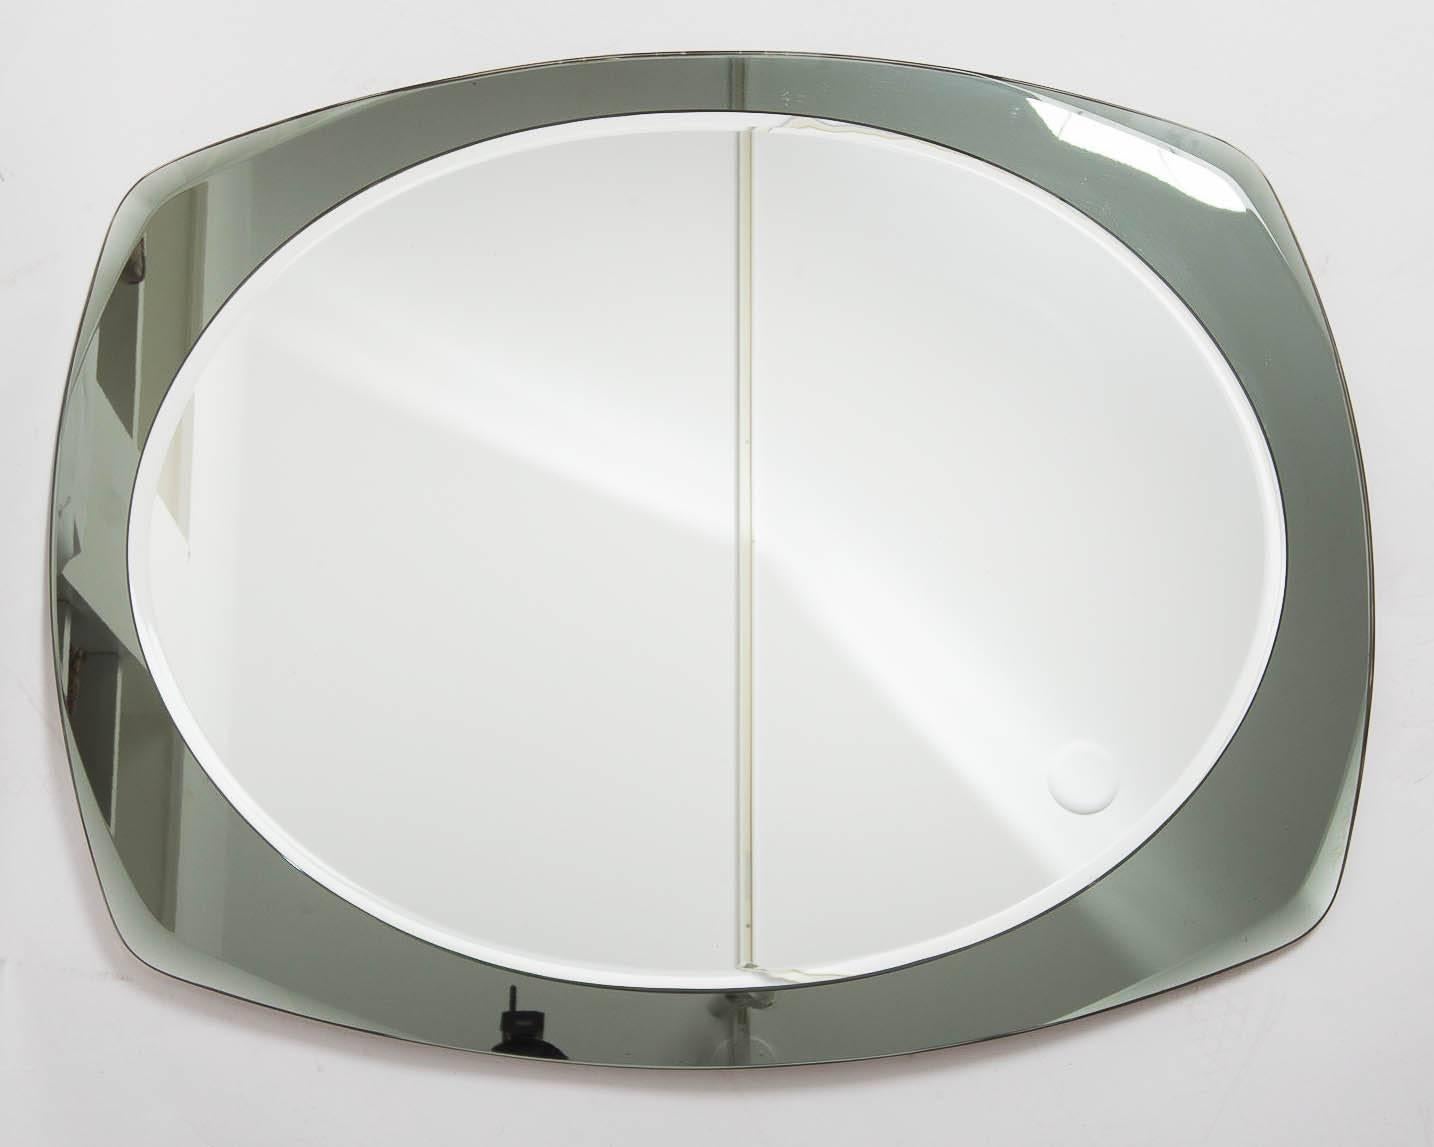 Mid-Century Modern Italian Mirror